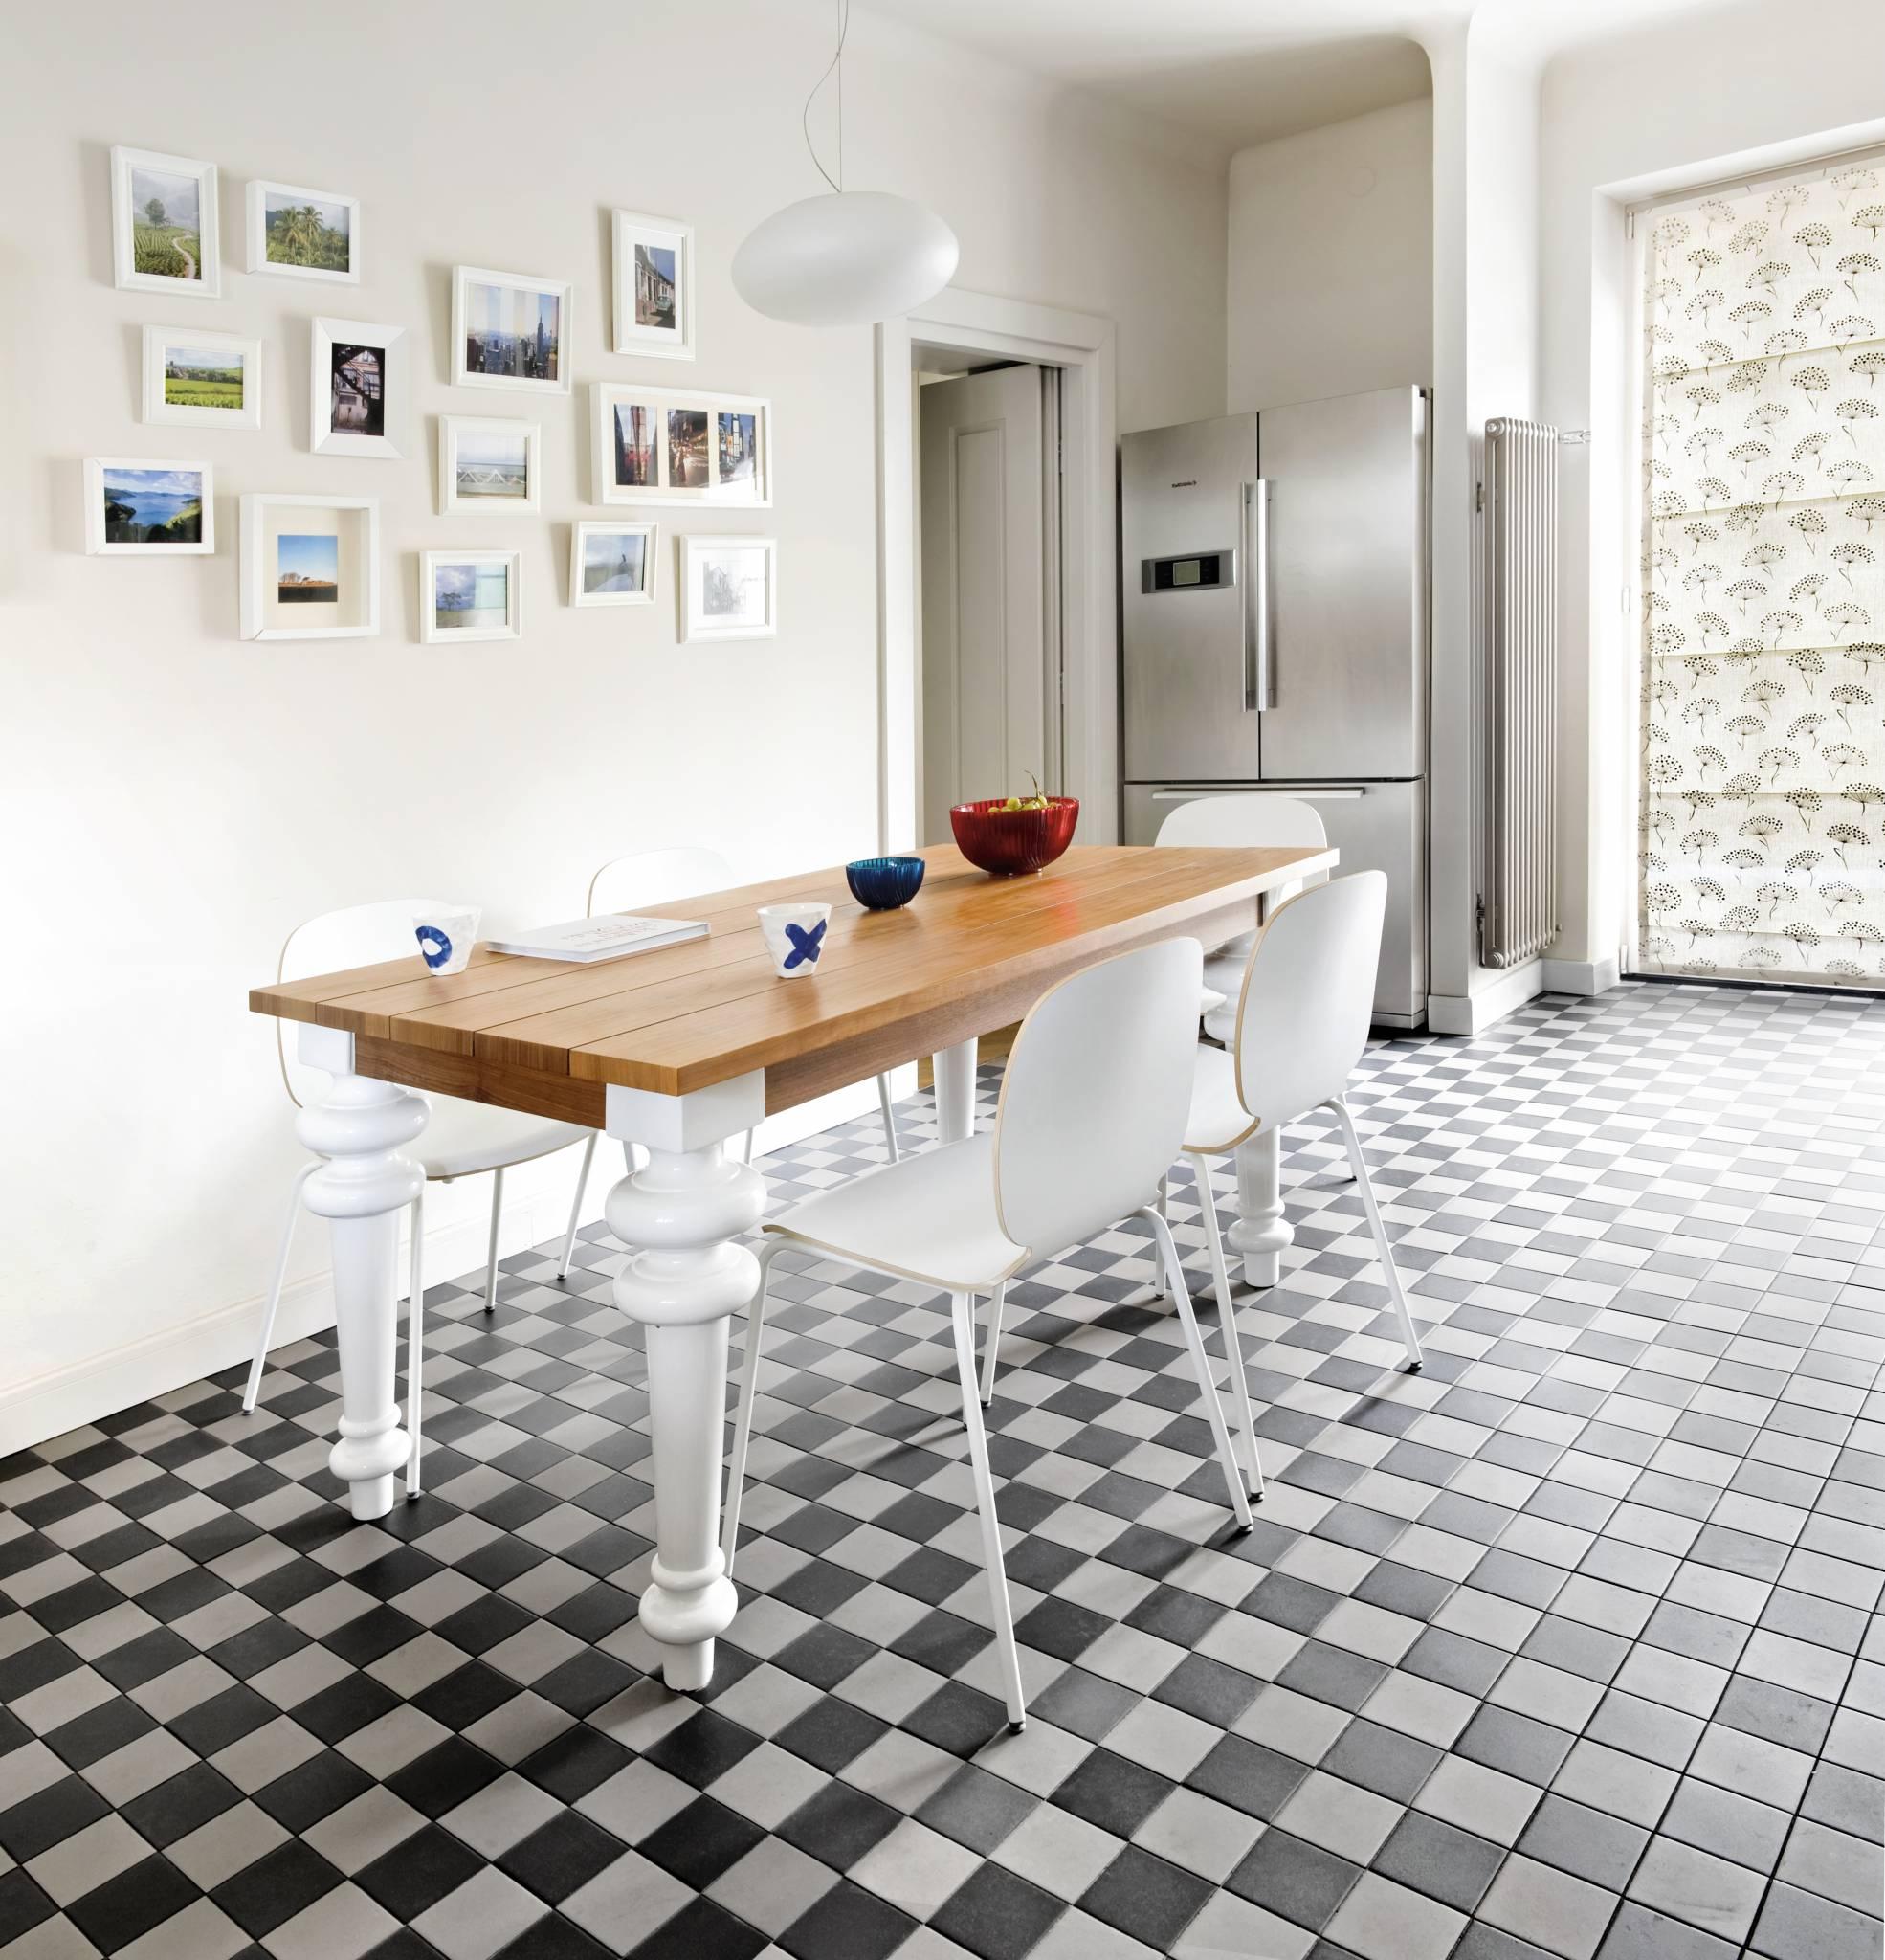  Kuchenny stół Gray 33, z firmy Gervasoni, projektu Paoli Navone, zaproponowała Maria Thiel-Roman. Tak jak ten dom łączy on w sobie stare z nowym. (Fot. Jakub Pajewski)